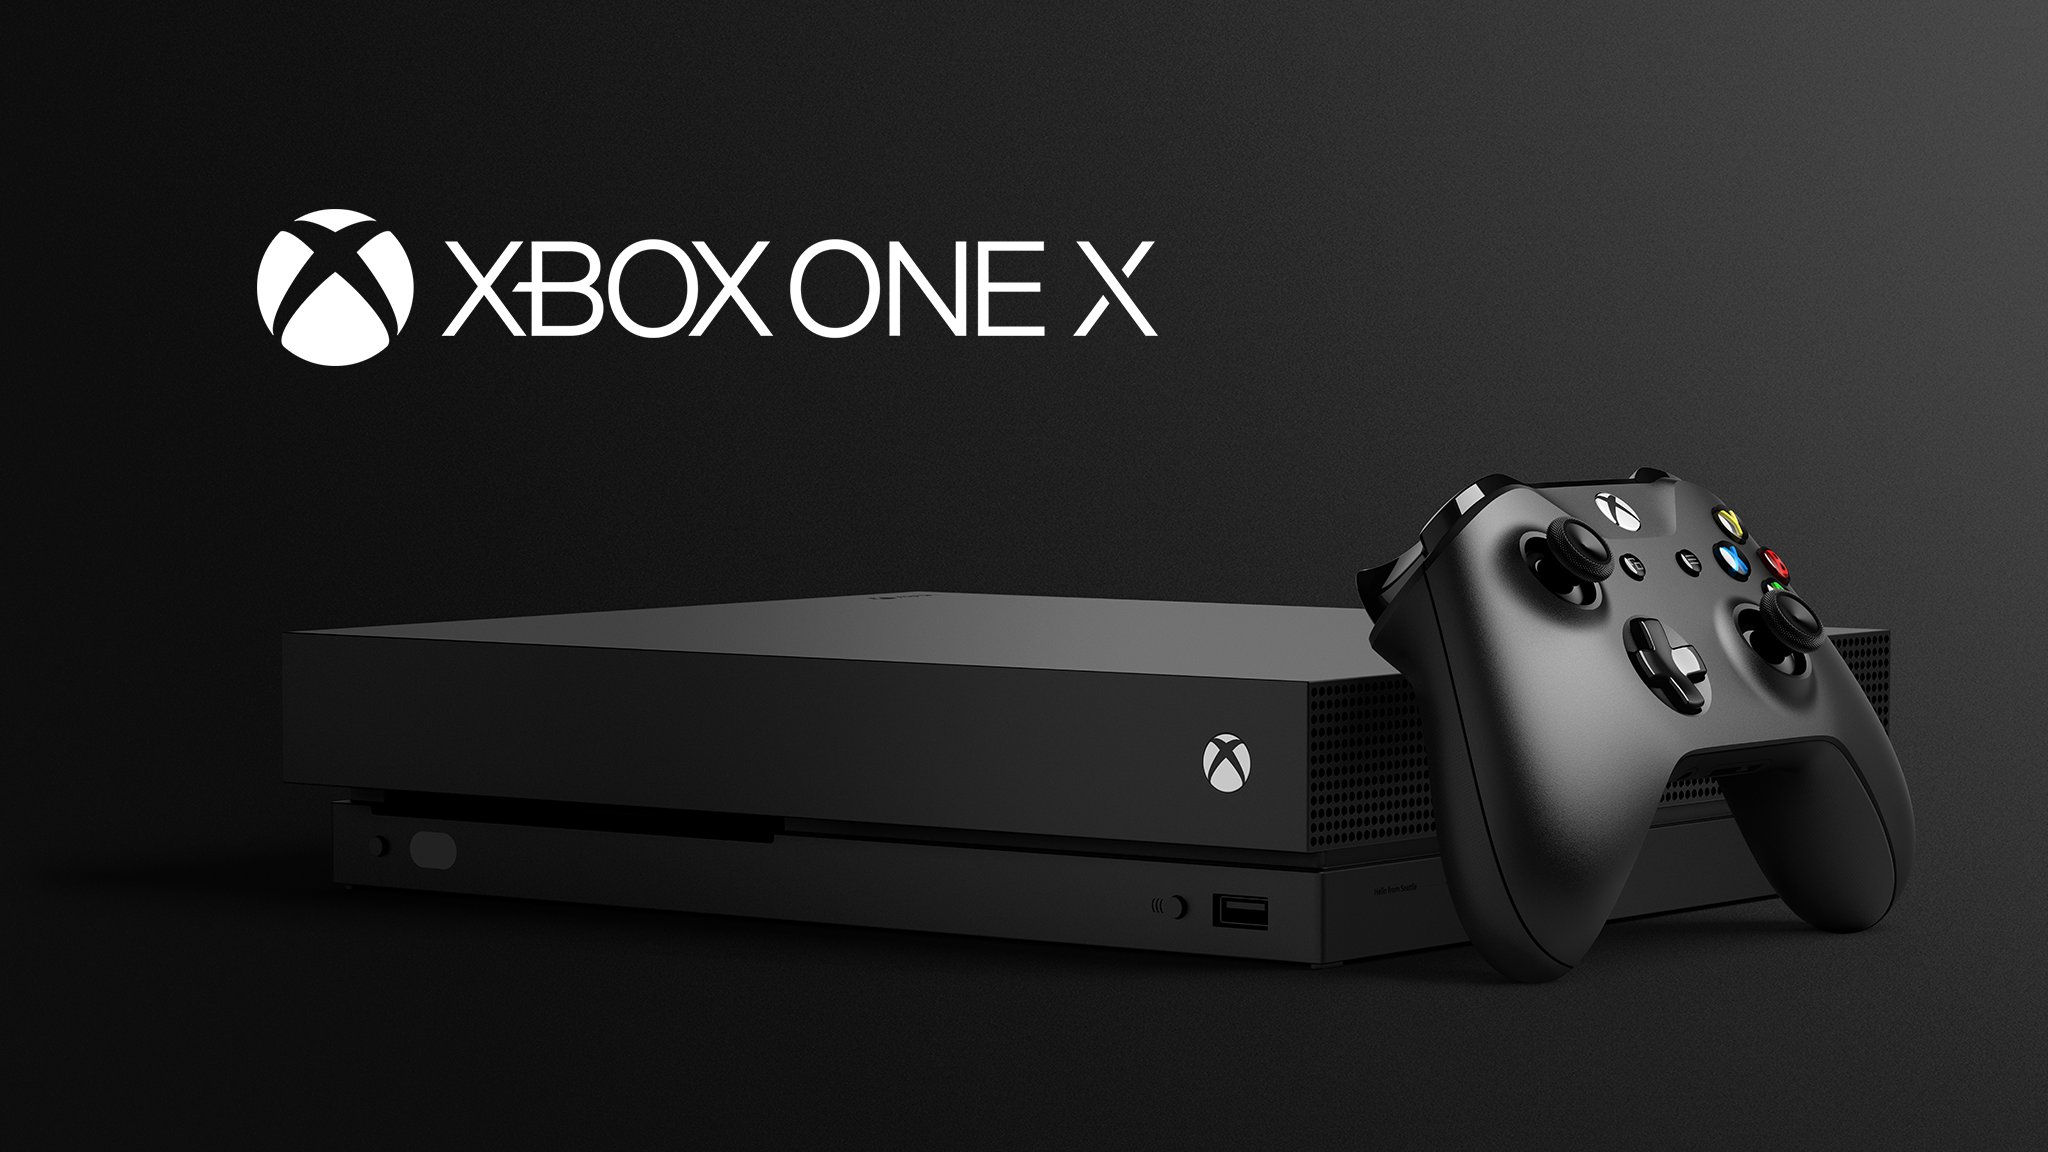 4Kゲーム対応の上位機種「Xbox One X」が正式発表。『KI』も4Kに ...